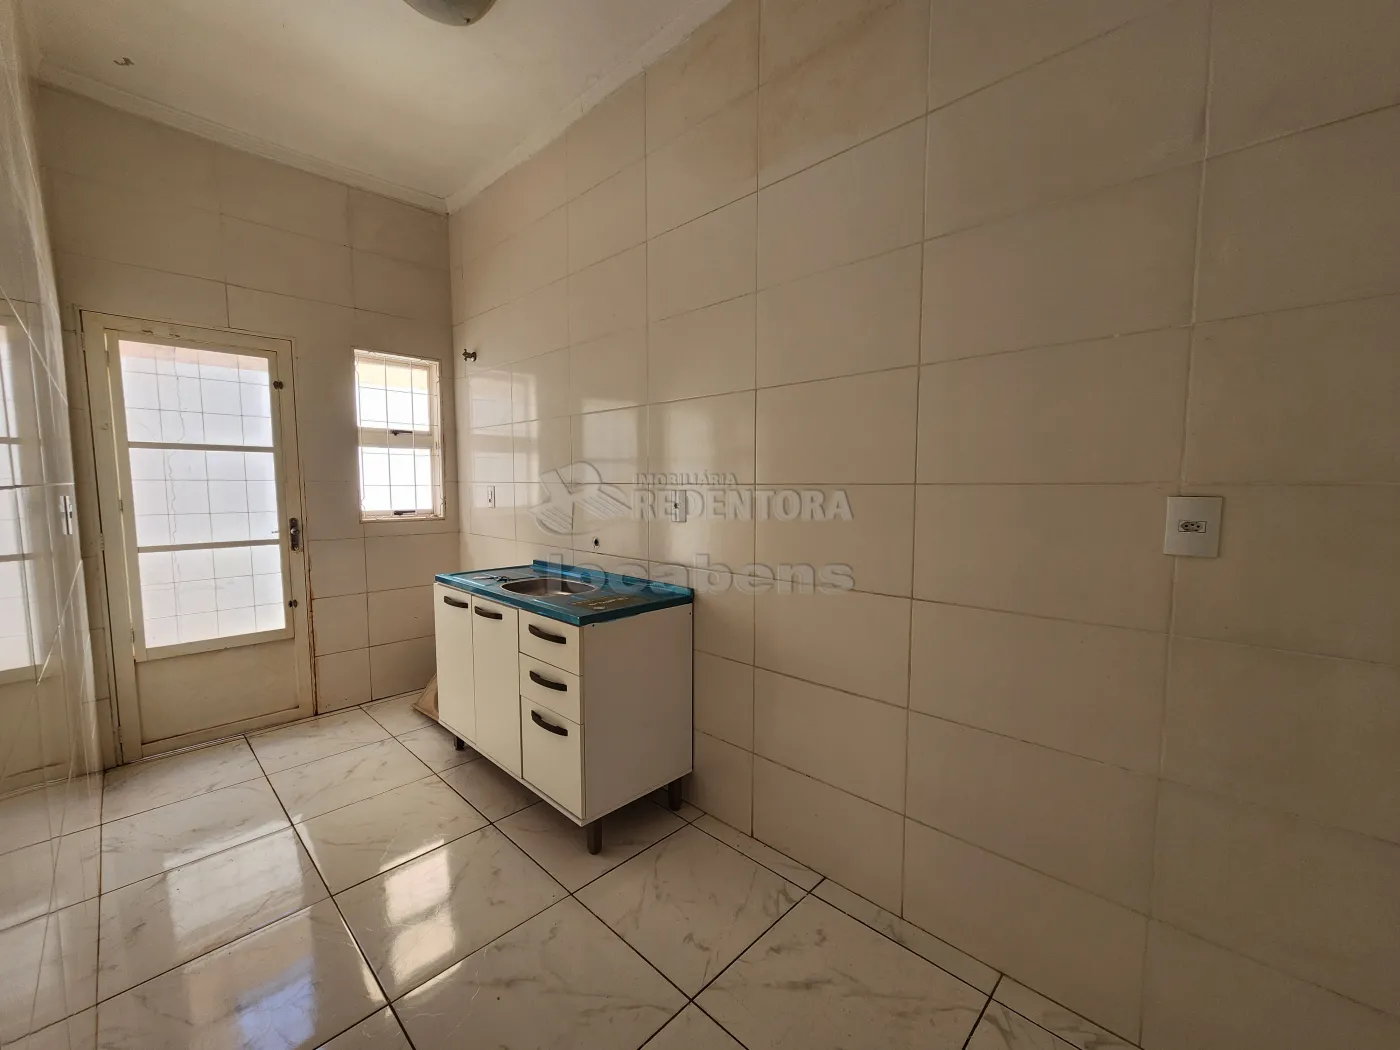 Alugar Casa / Padrão em São José do Rio Preto apenas R$ 980,00 - Foto 12